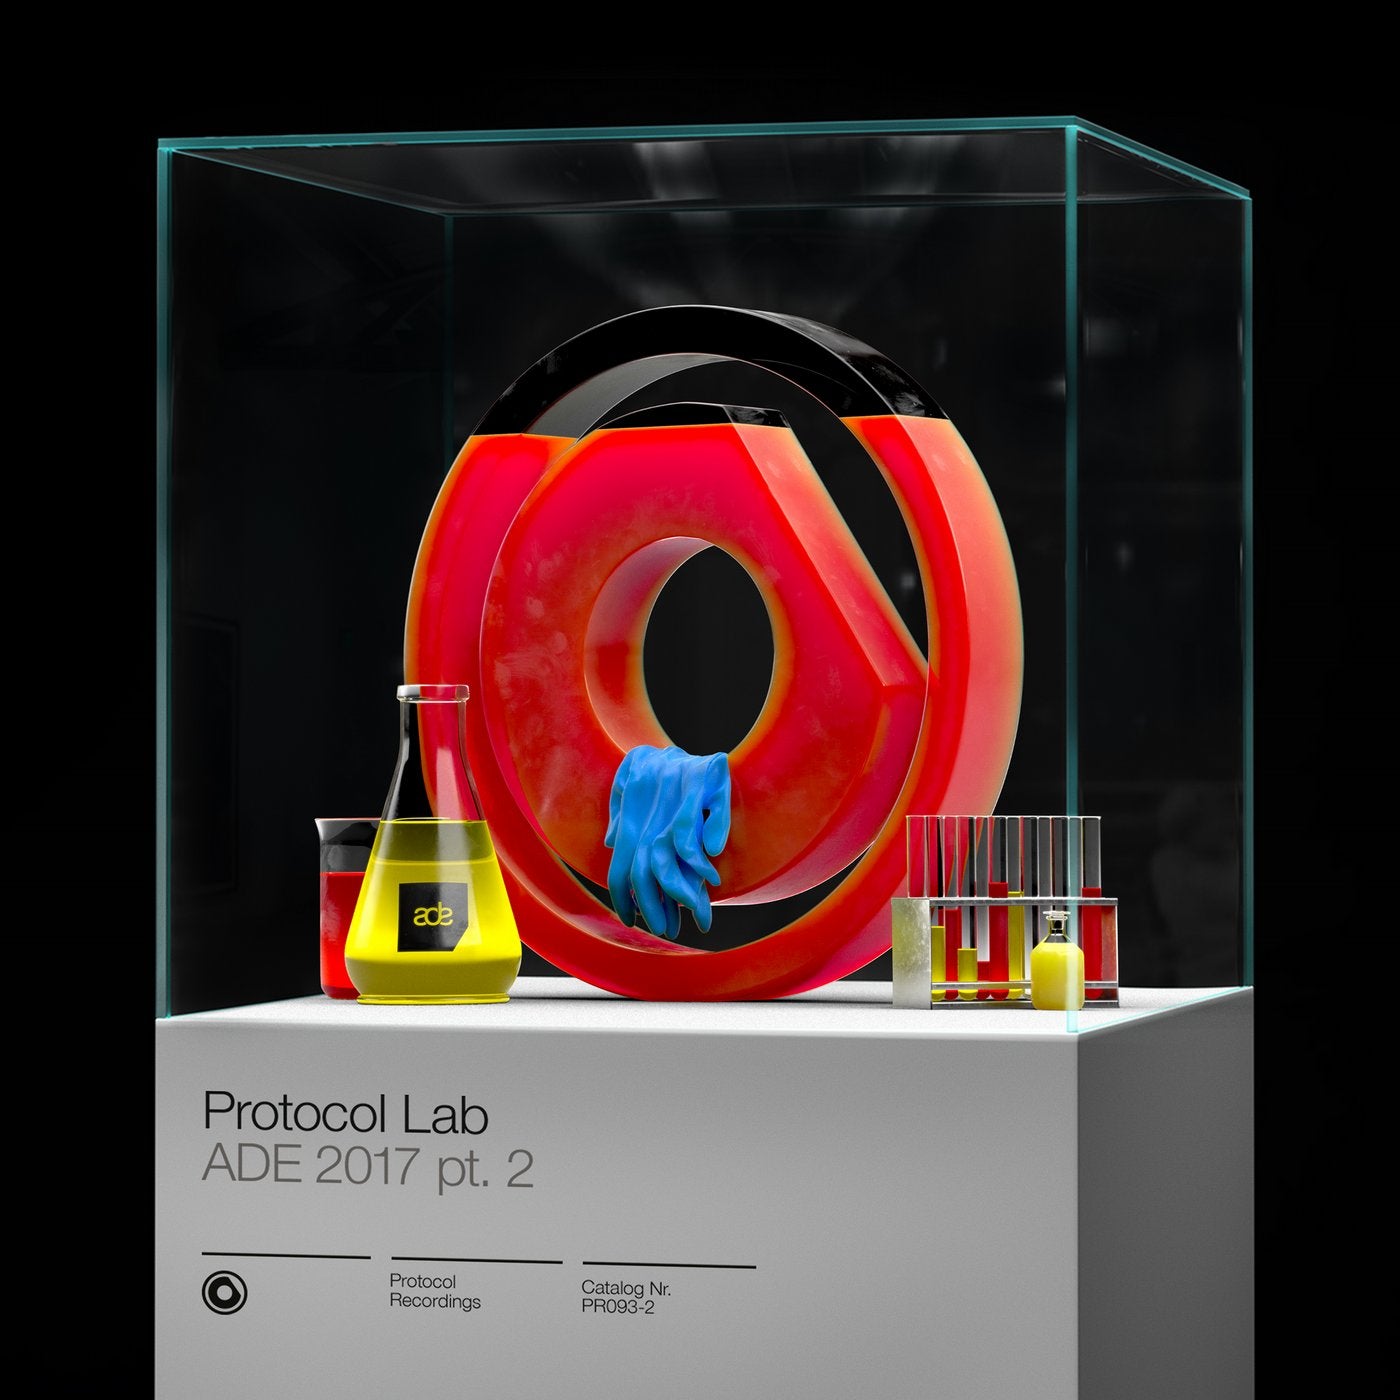 Protocol Lab - ADE 2017 pt. 2